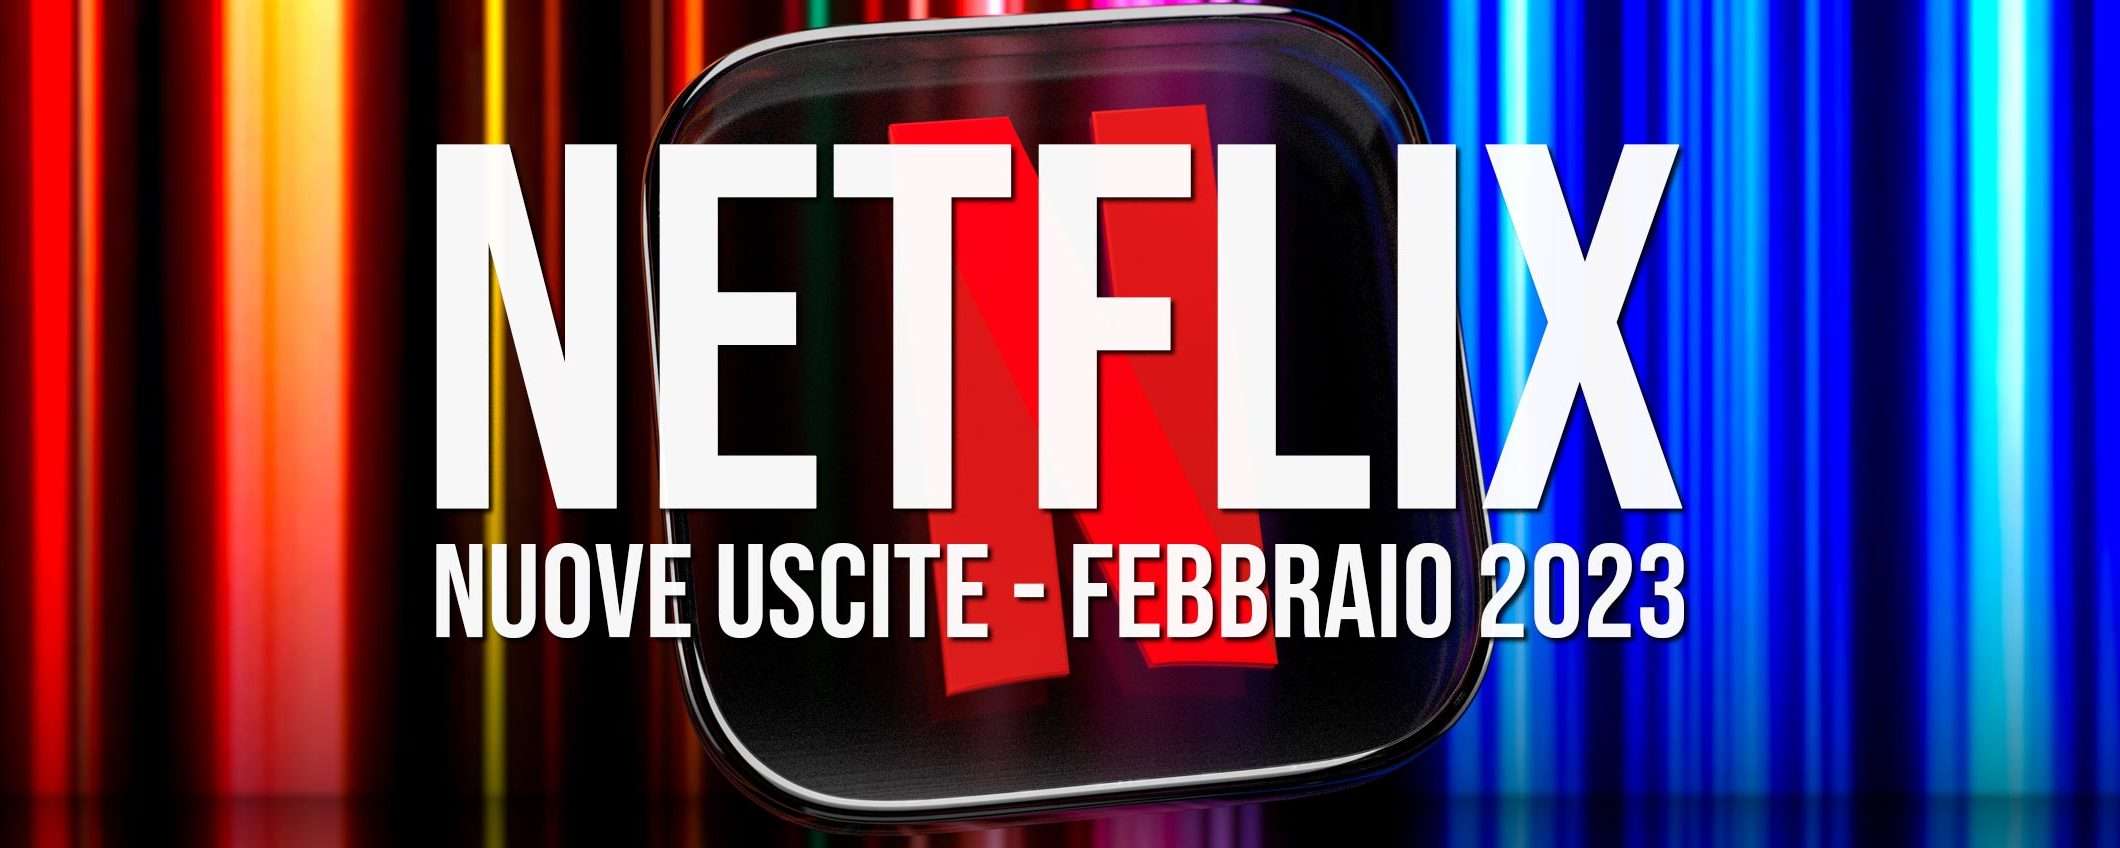 Netflix: le nuove uscite di febbraio 2023